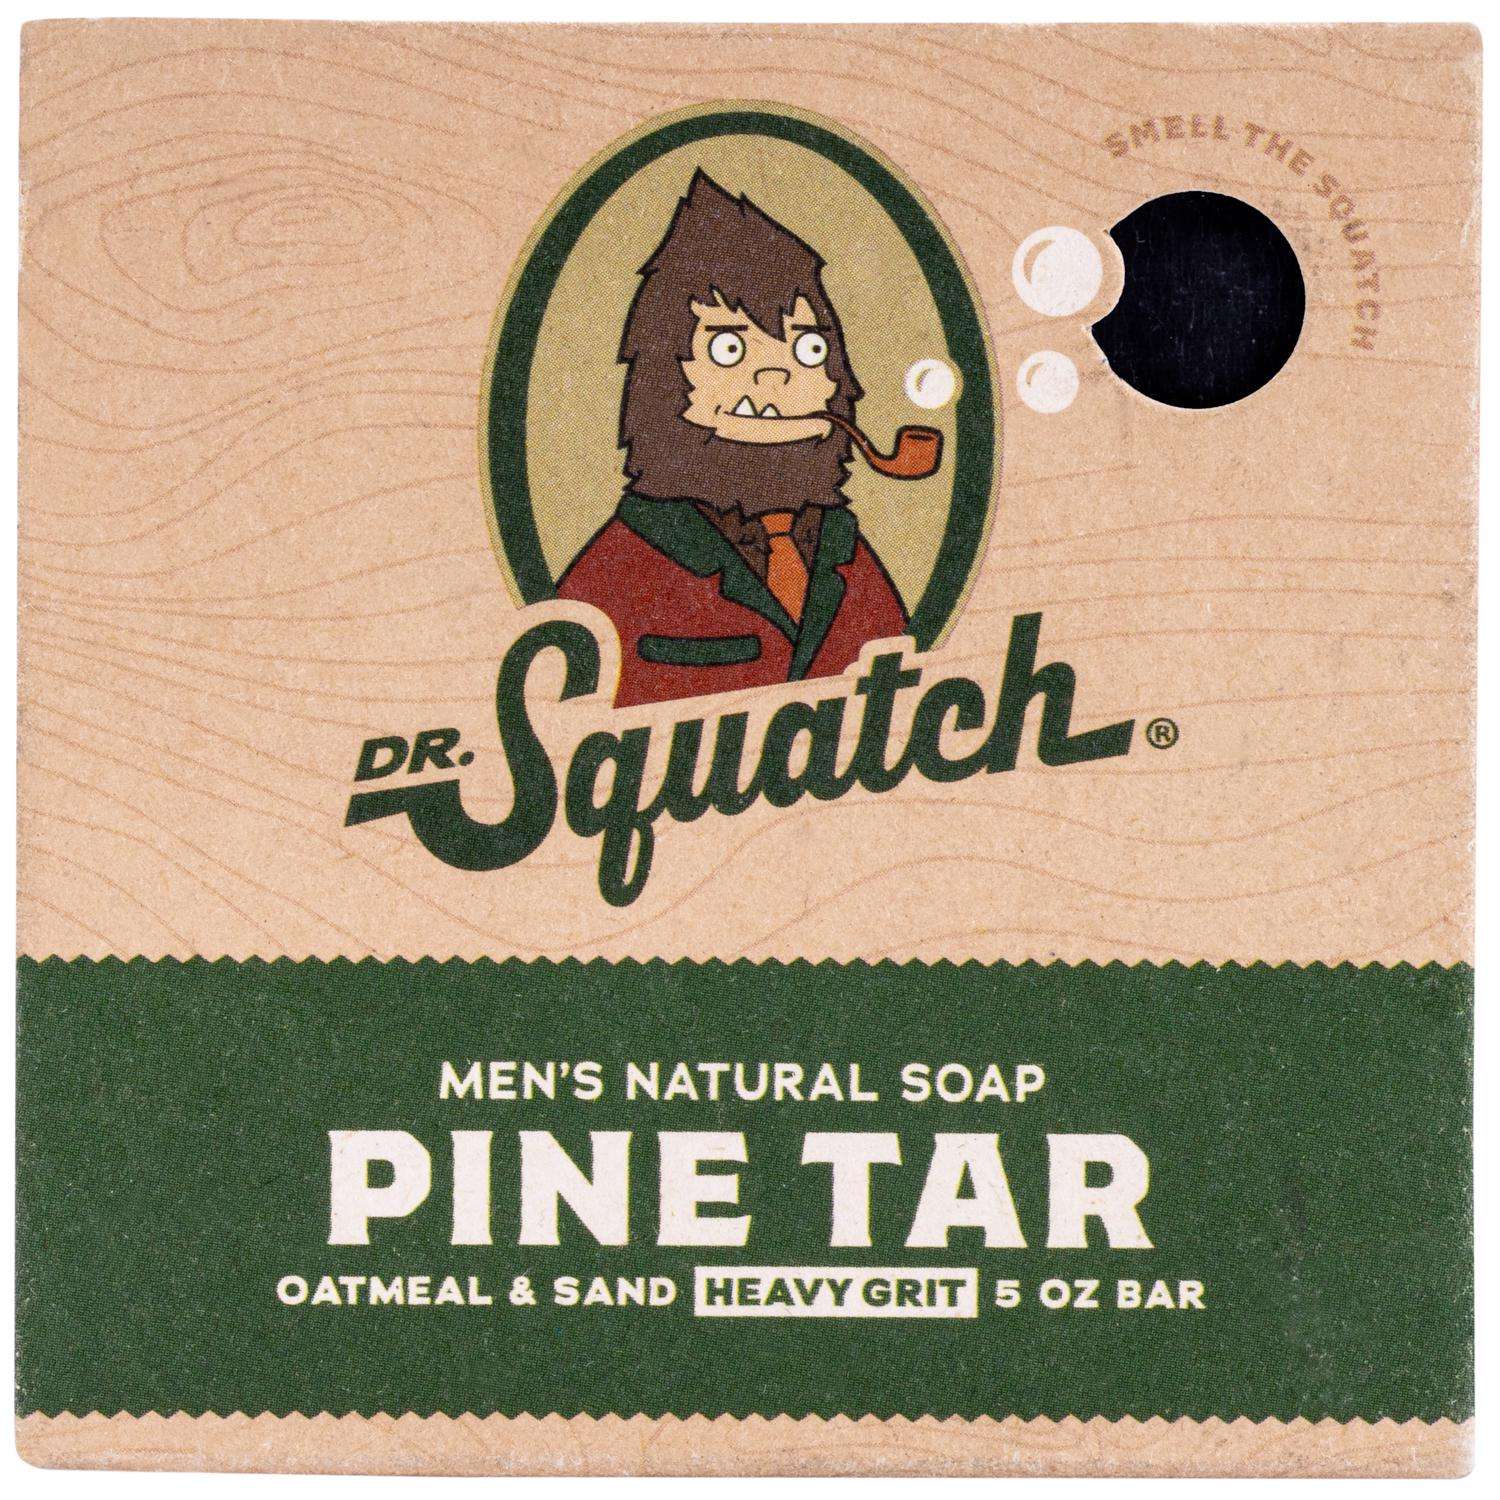 Dr. Squatch Pine Tar Hair Care Kit